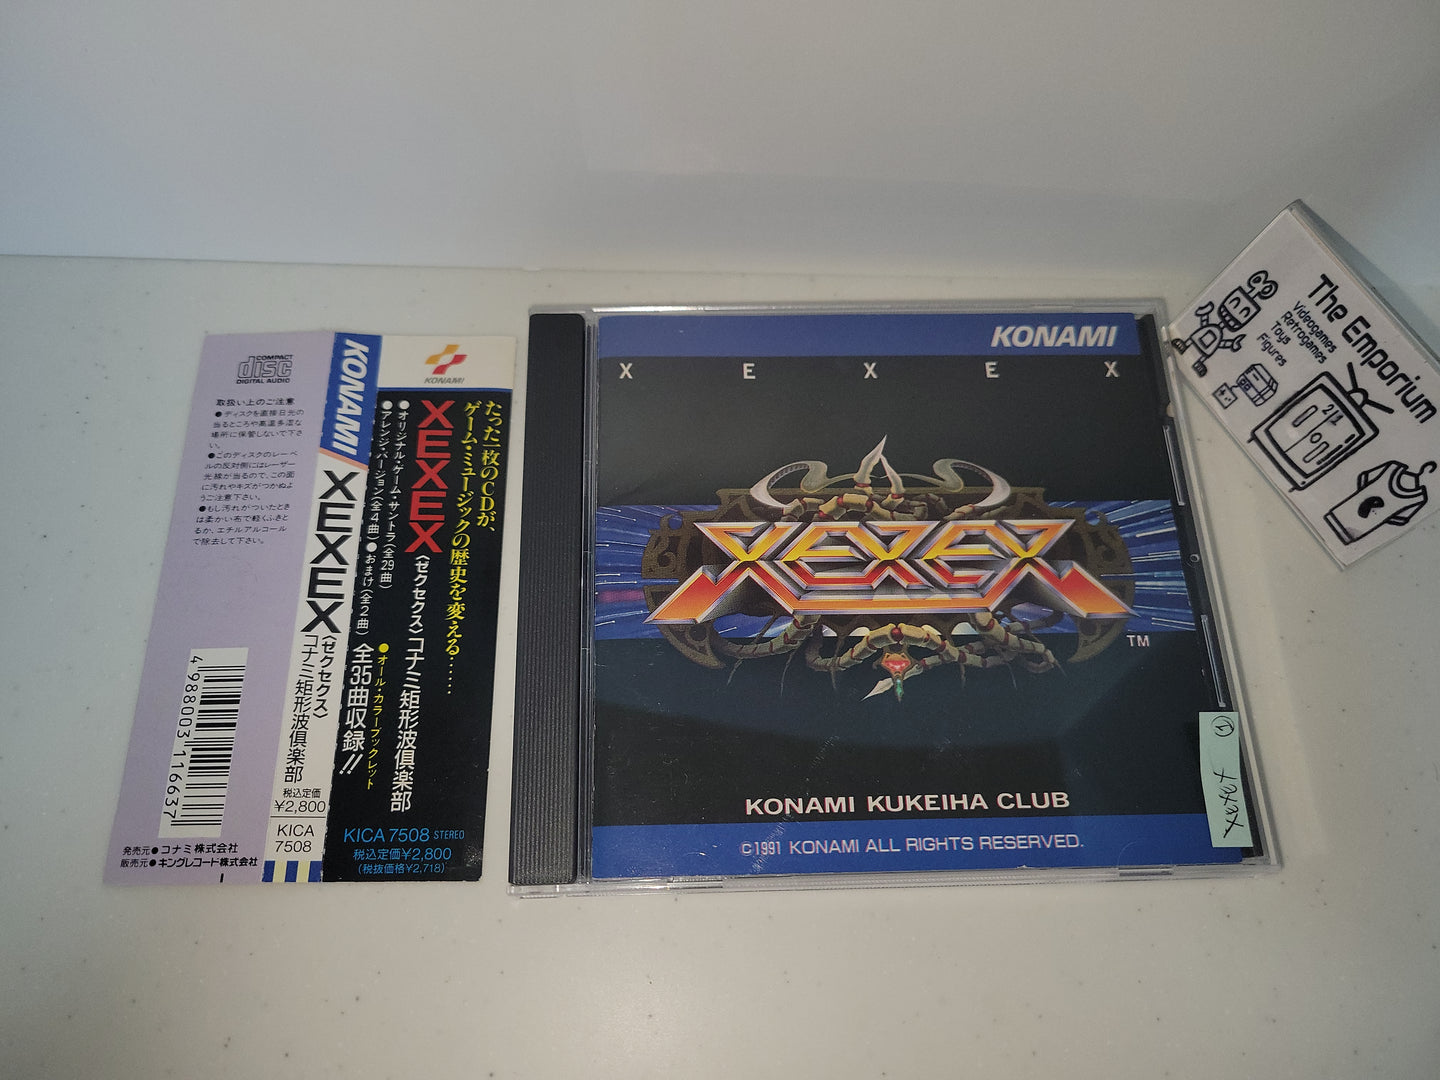 XEXEX - Music cd soundtrack